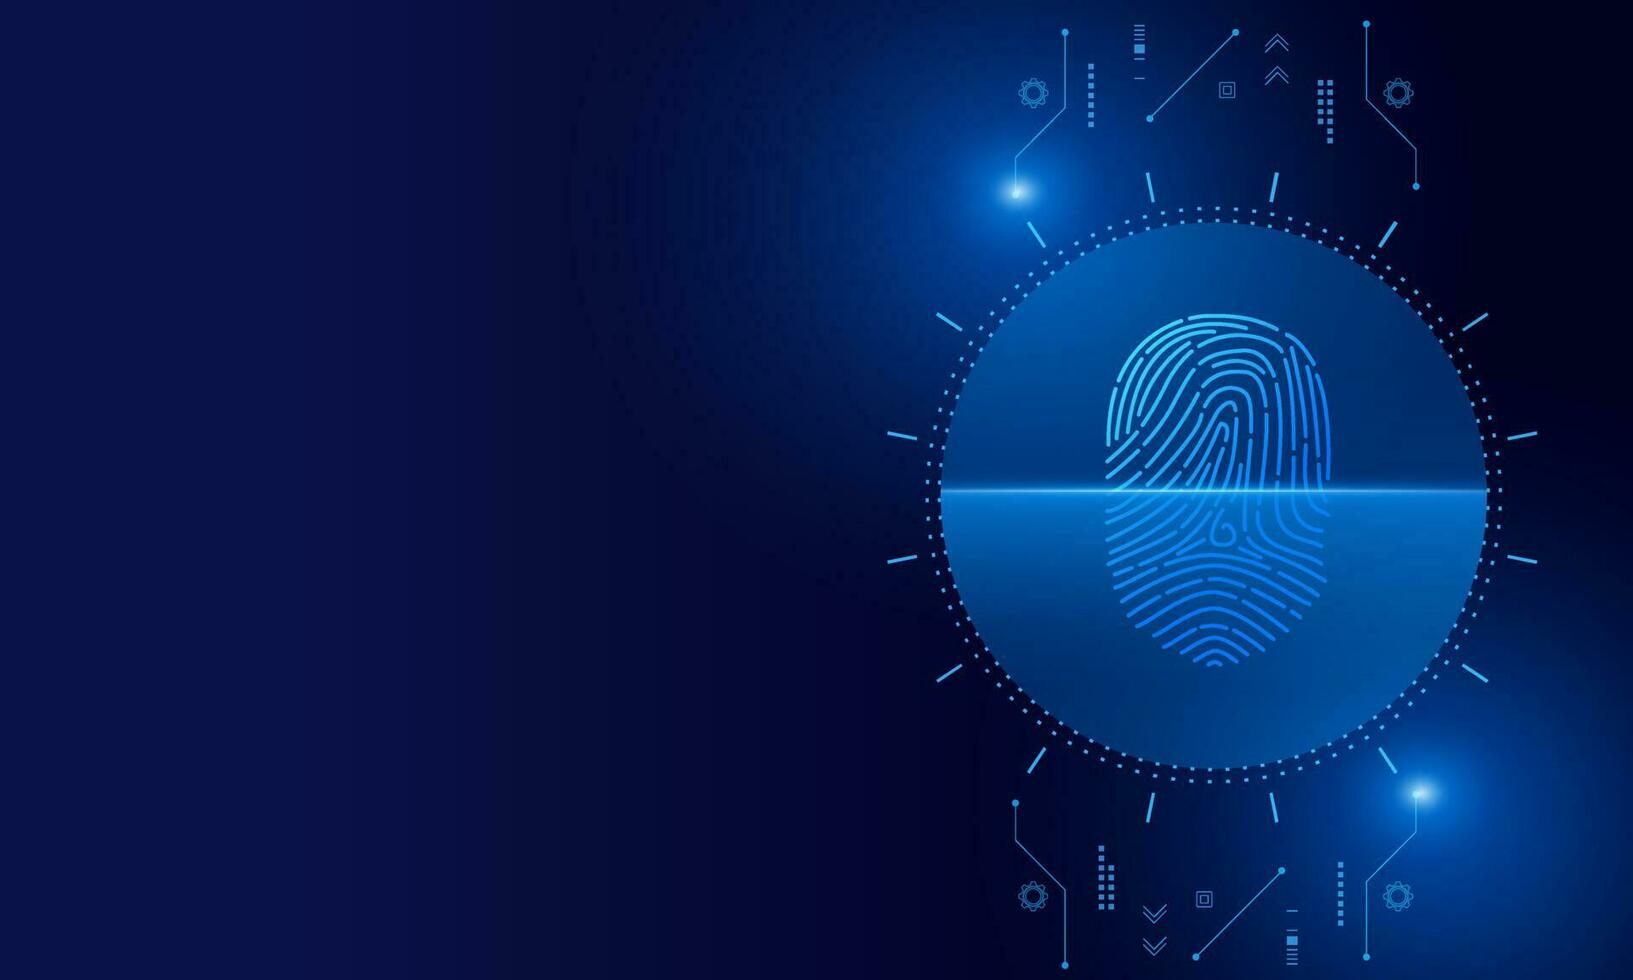 Fingerabdruck scannen, Cybersicherheit und Passwortkontrolle durch Fingerabdrücke, Zugang mit biometrischer Identifizierung vektor